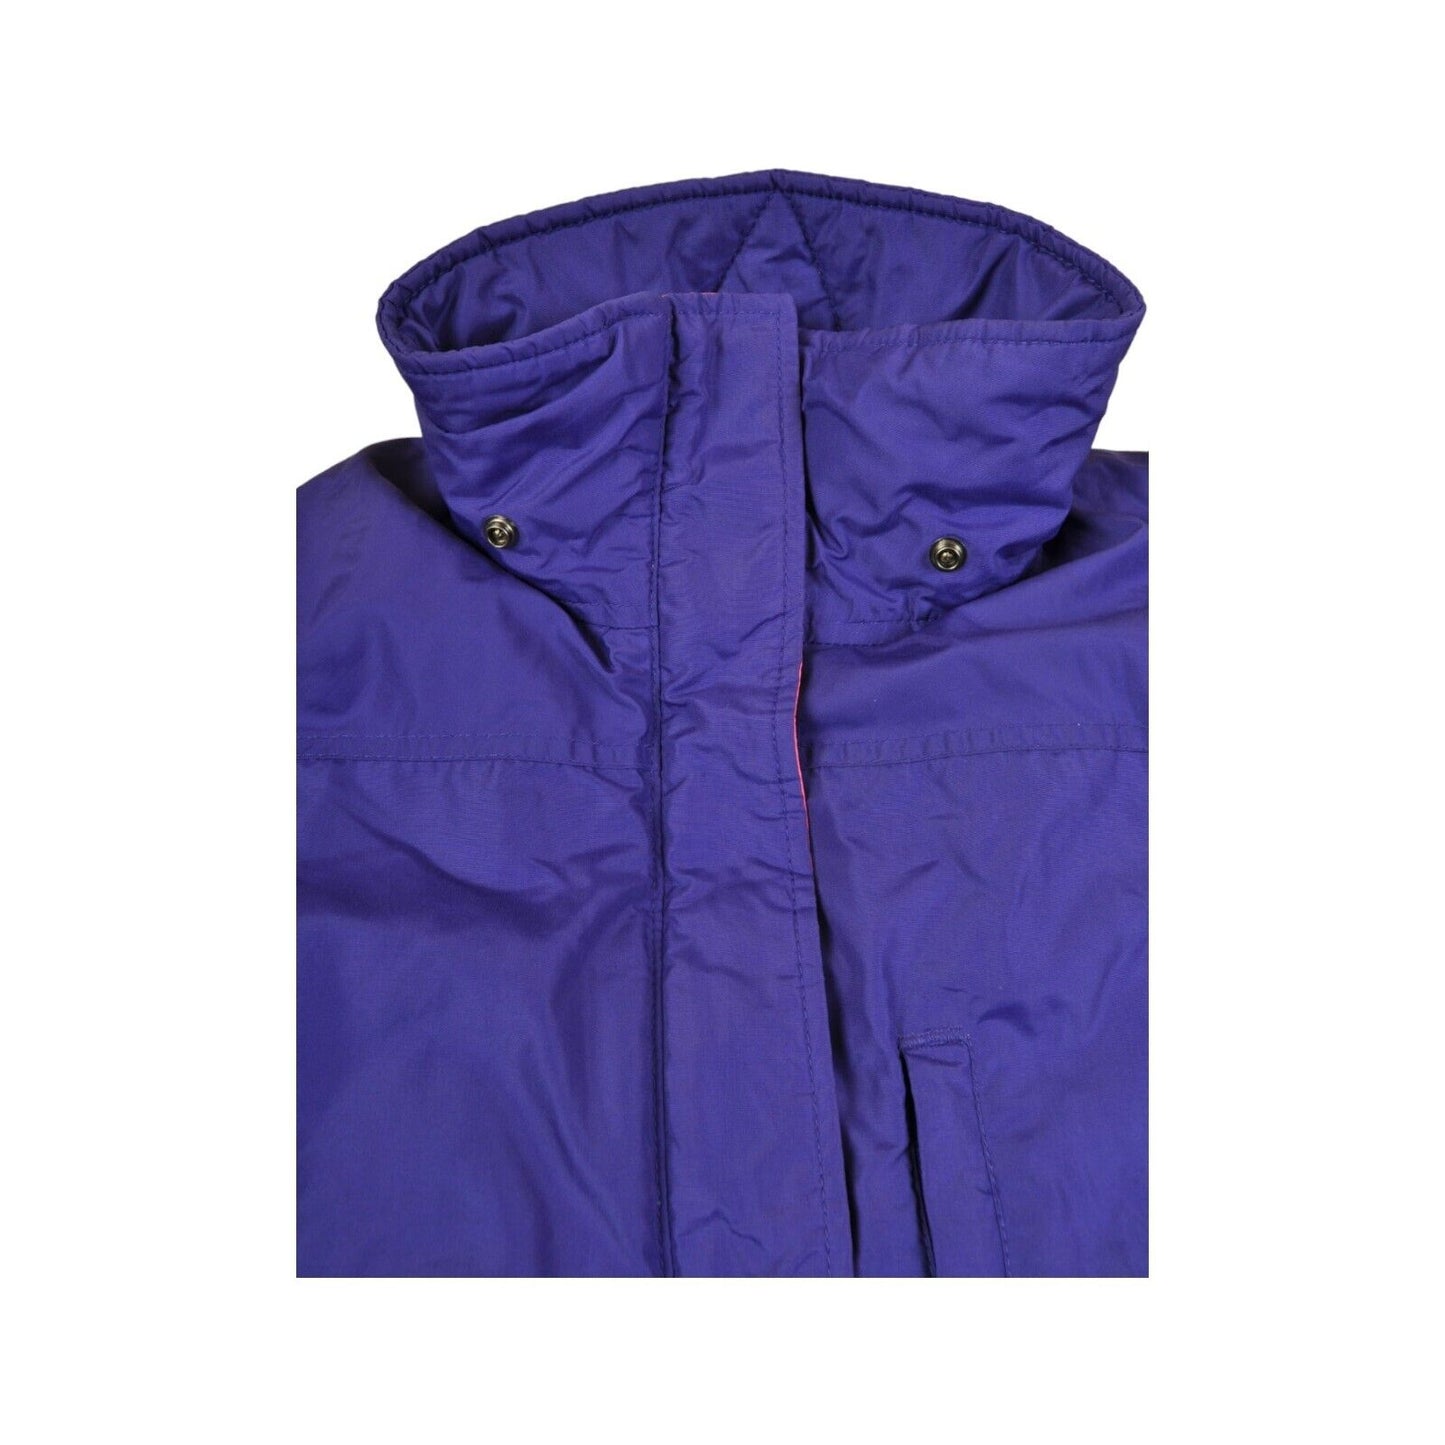 Vintage Columbia Jacket Waterproof Purple/Pink Ladies Medium